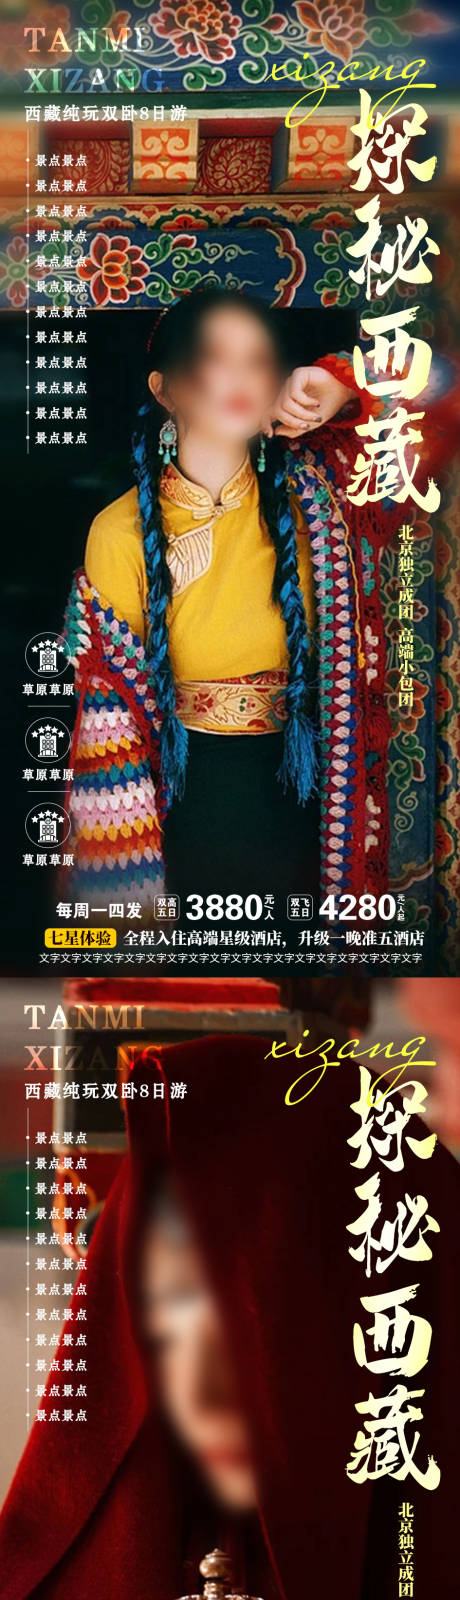 探秘西藏旅游海报